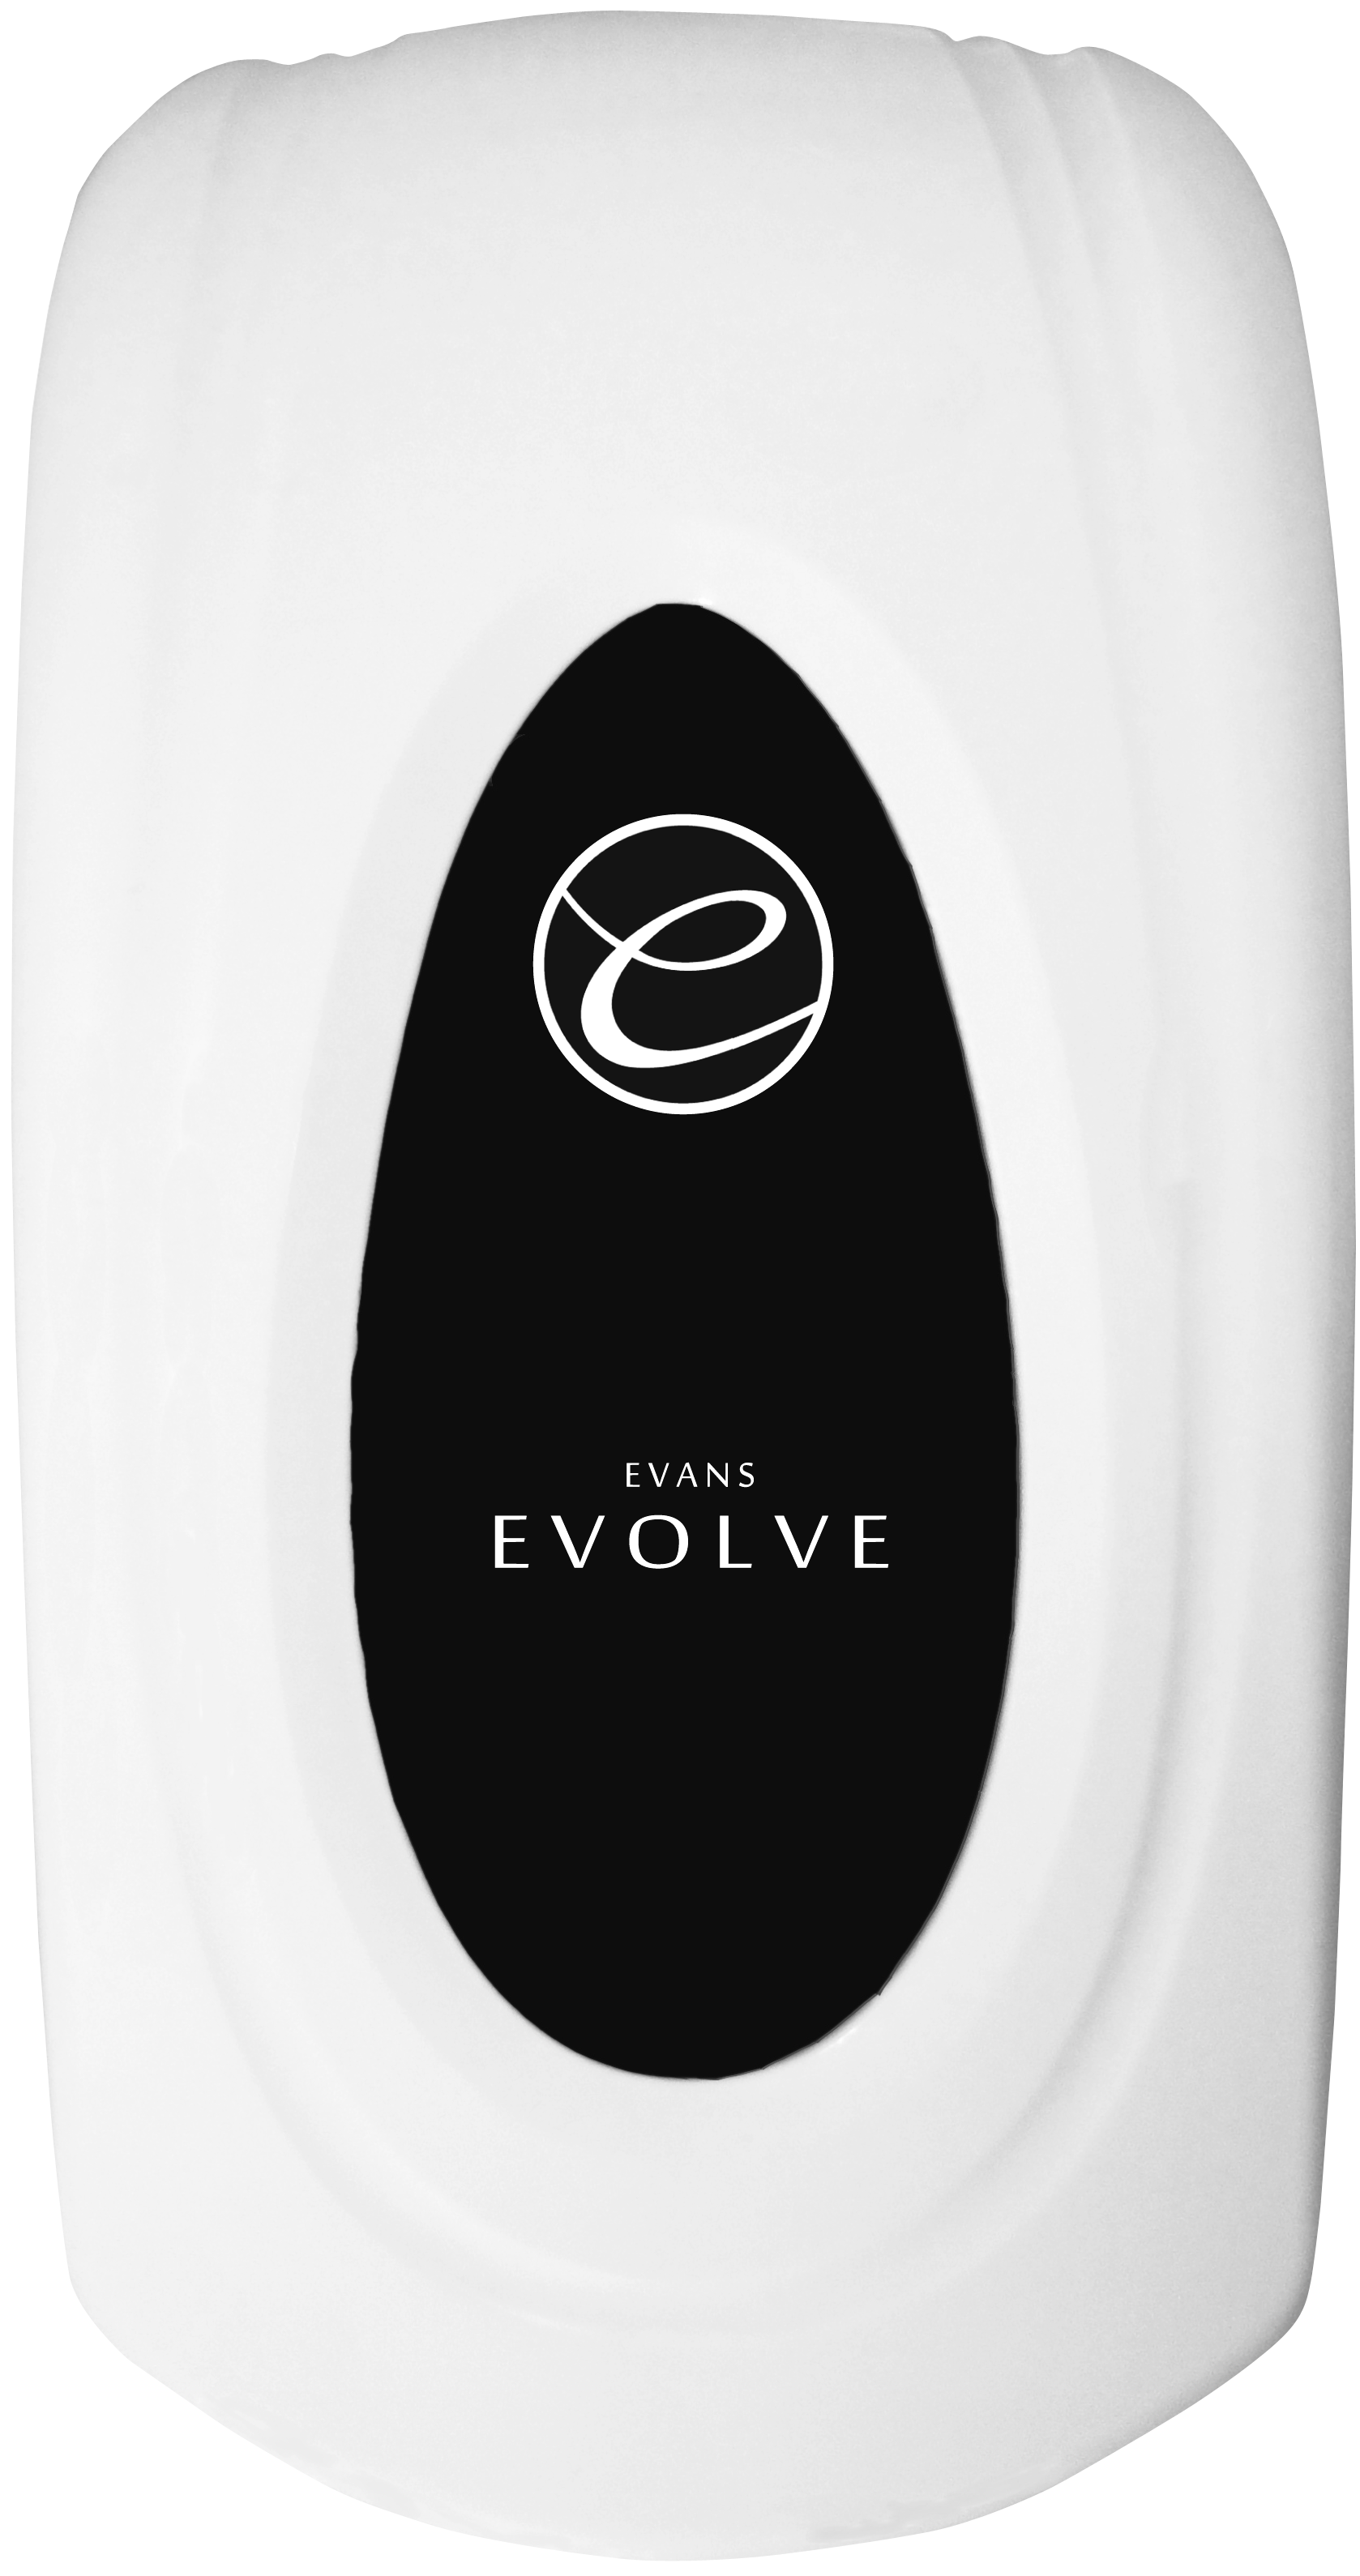 Evans Evolve Foam Soap Dispenser 